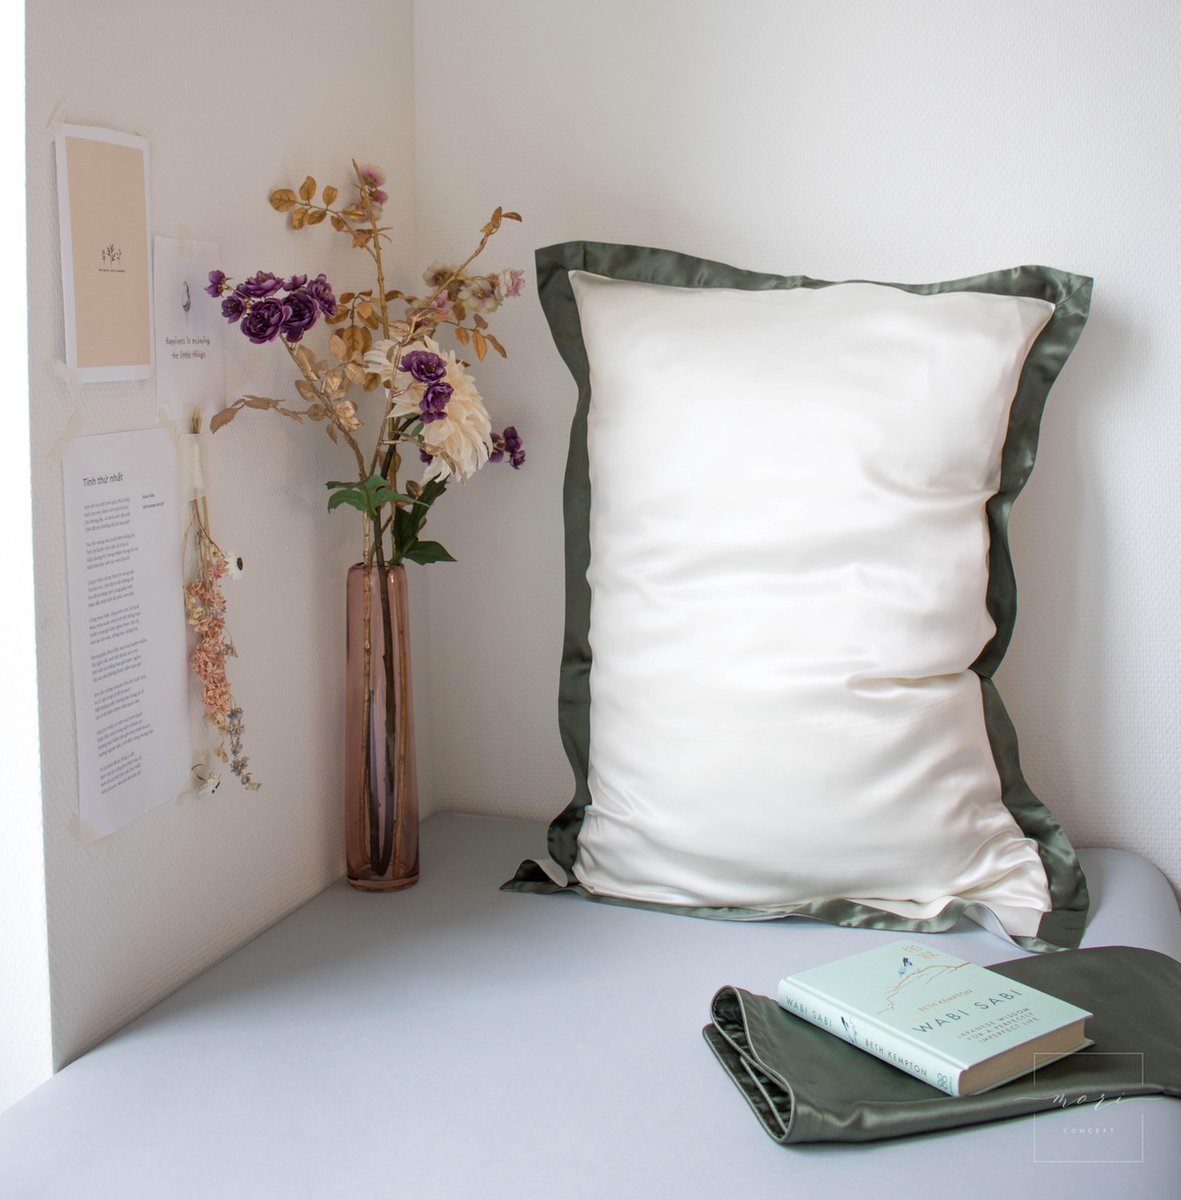 Mori Concept - Delight zijden kussensloop - 50x75 - Creme + Moss Groen - 100% Moerbei zijde –Mulberry Silk Pillowcase